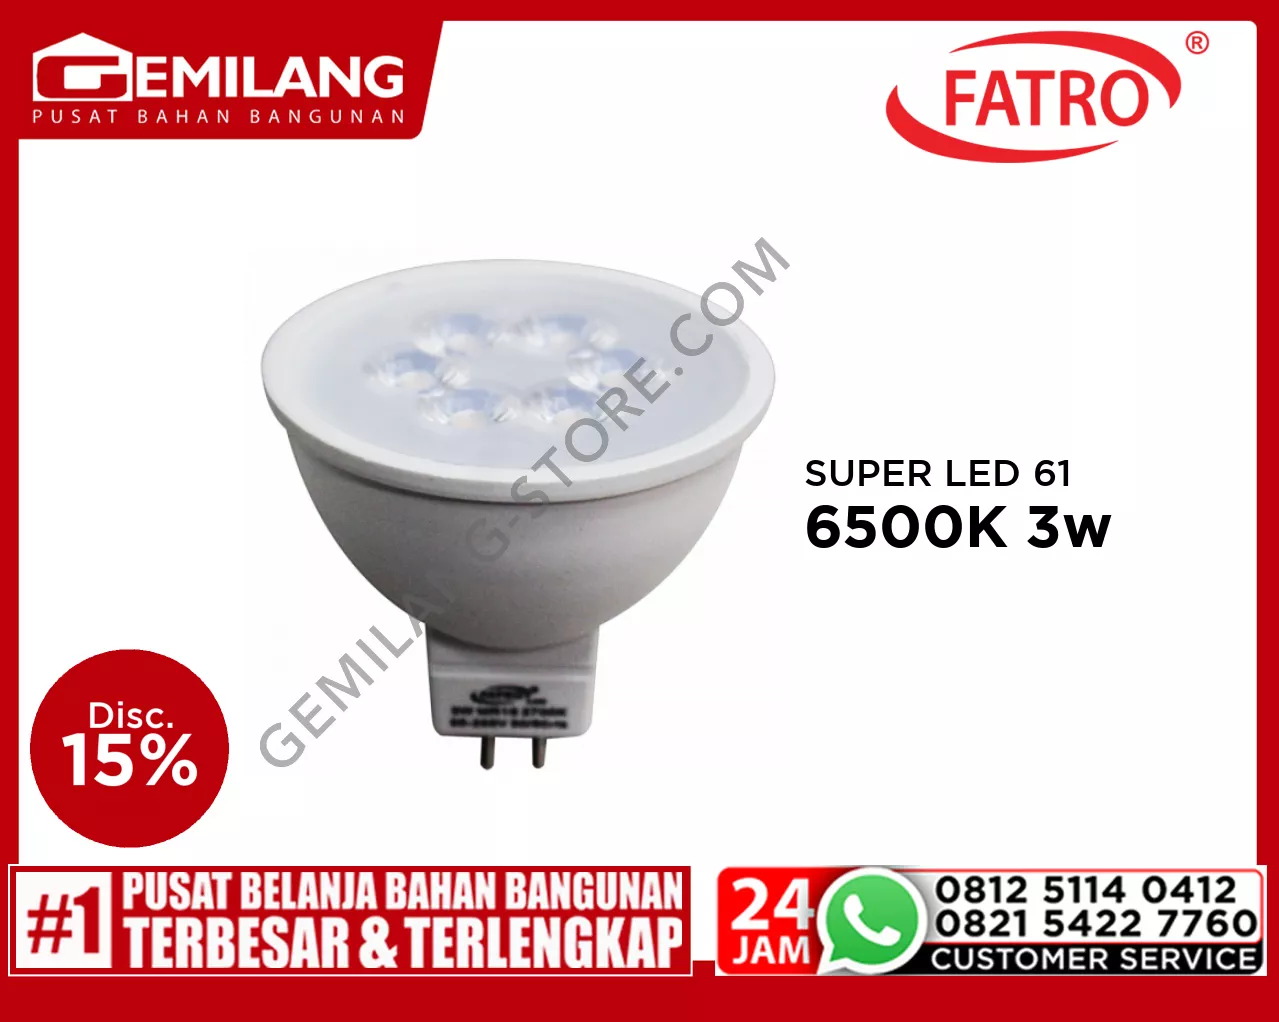 FATRO SUPER LED 60 MR16 220v 6500K 3w